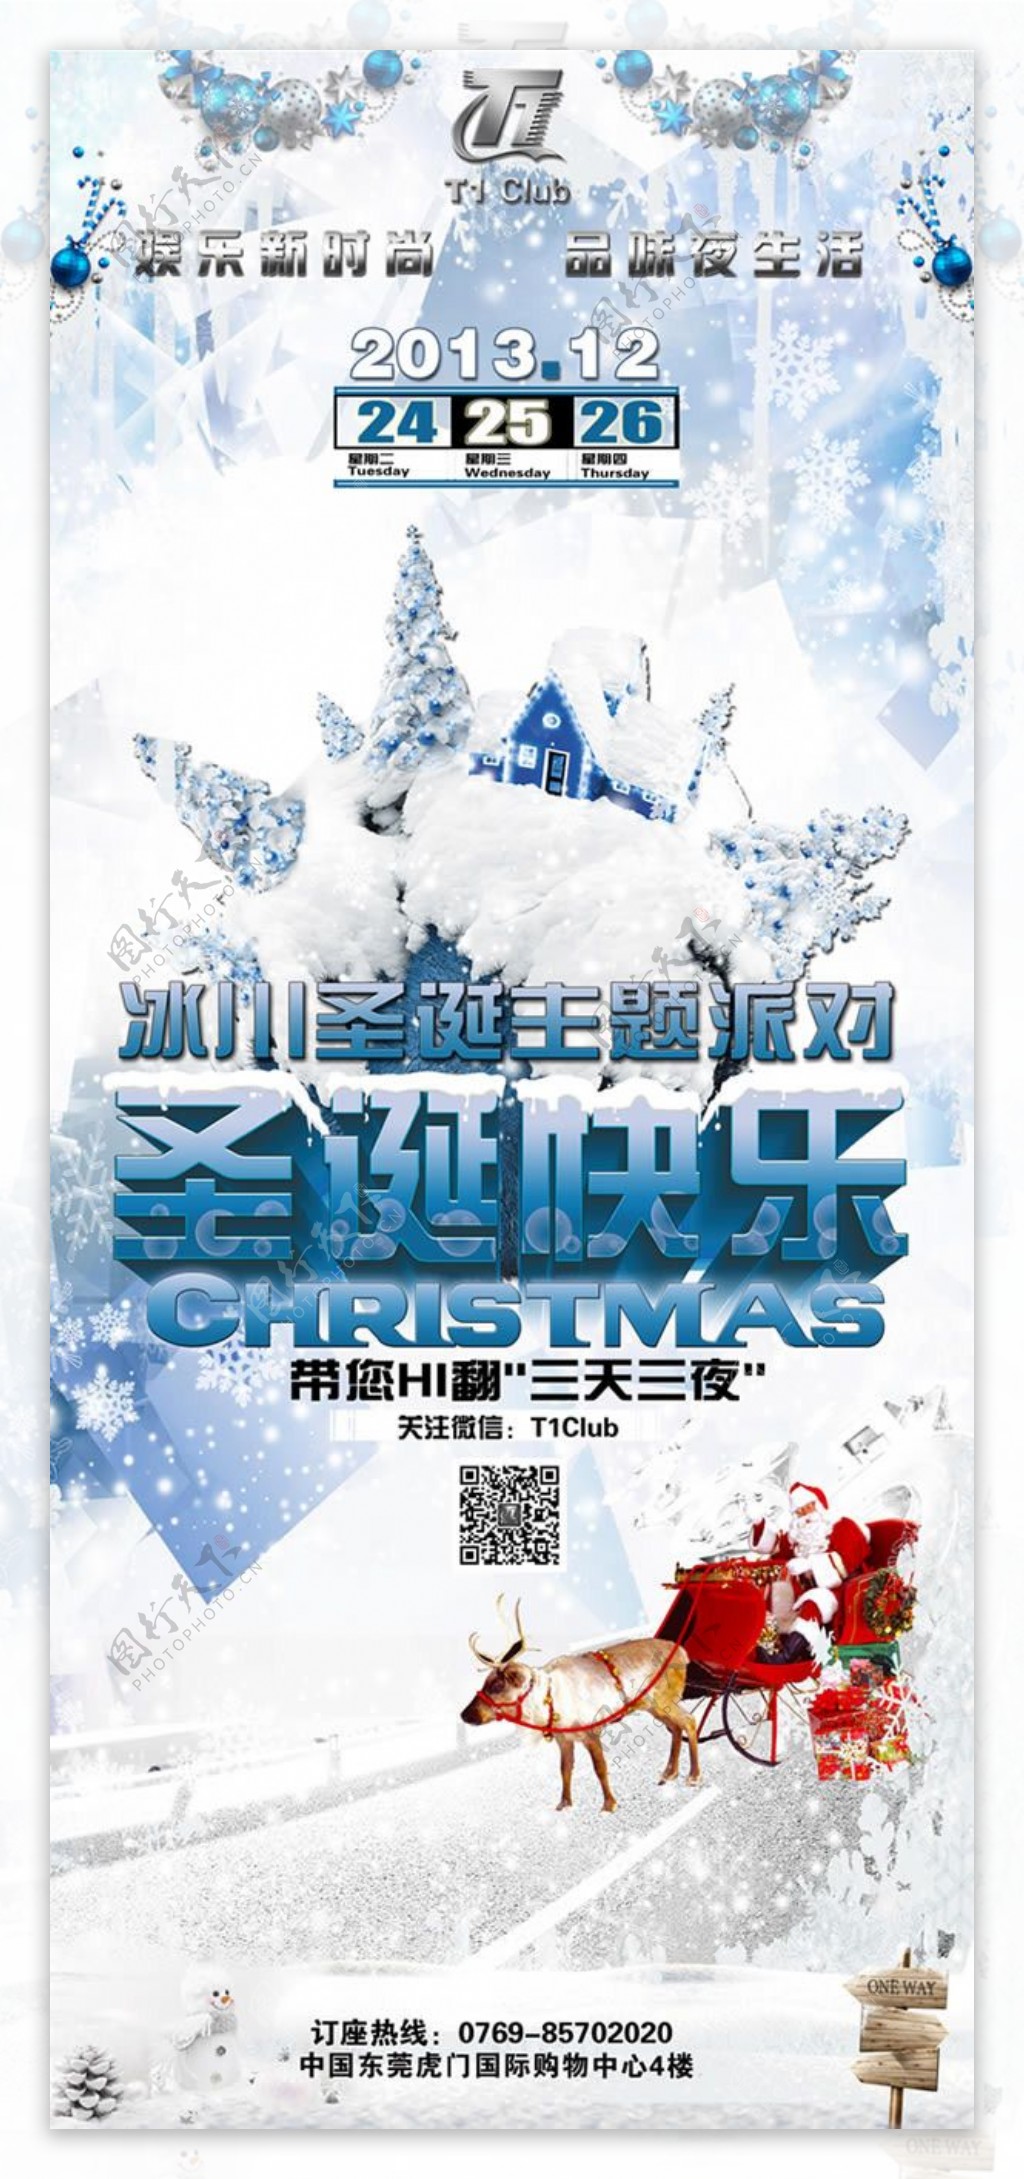 冰川圣诞节主题派对海报psd素材